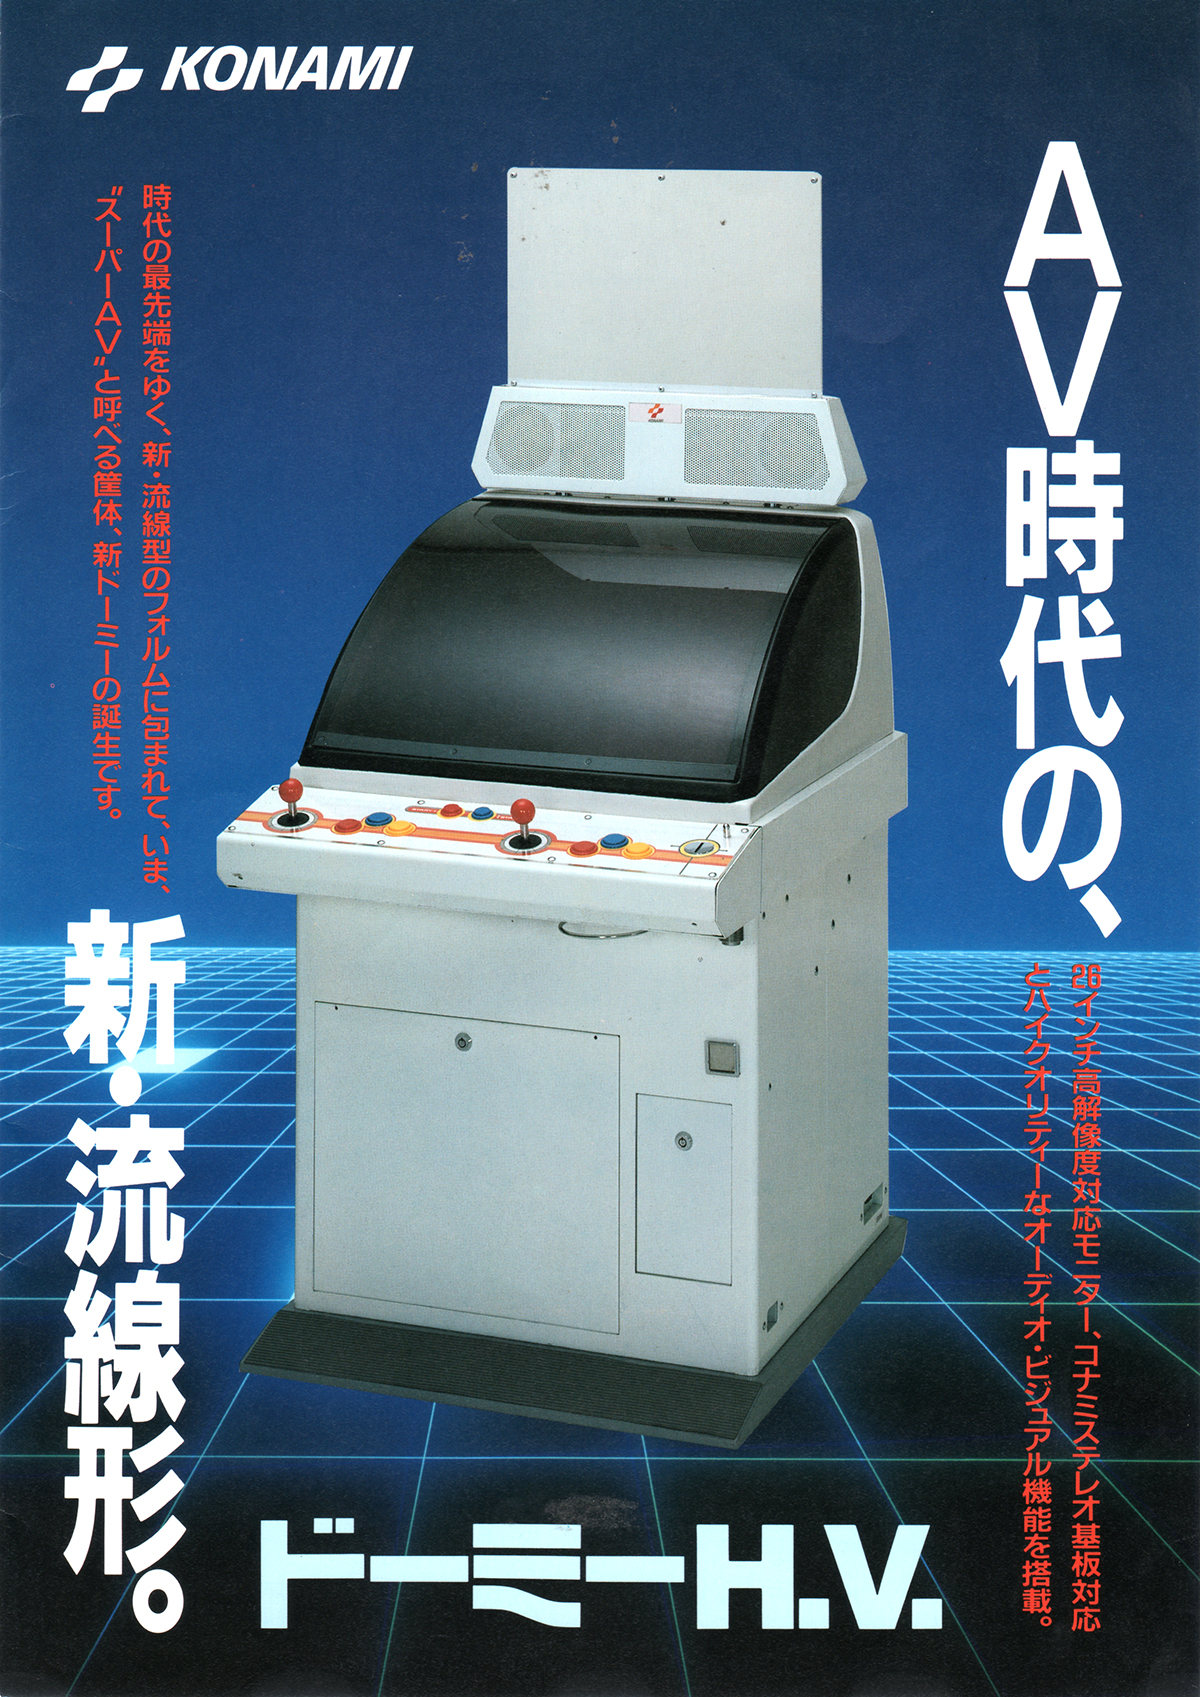 コナミ「ドーミーH.V.」ゲーム筐体チラシ/Konami Game Chassis Flyer